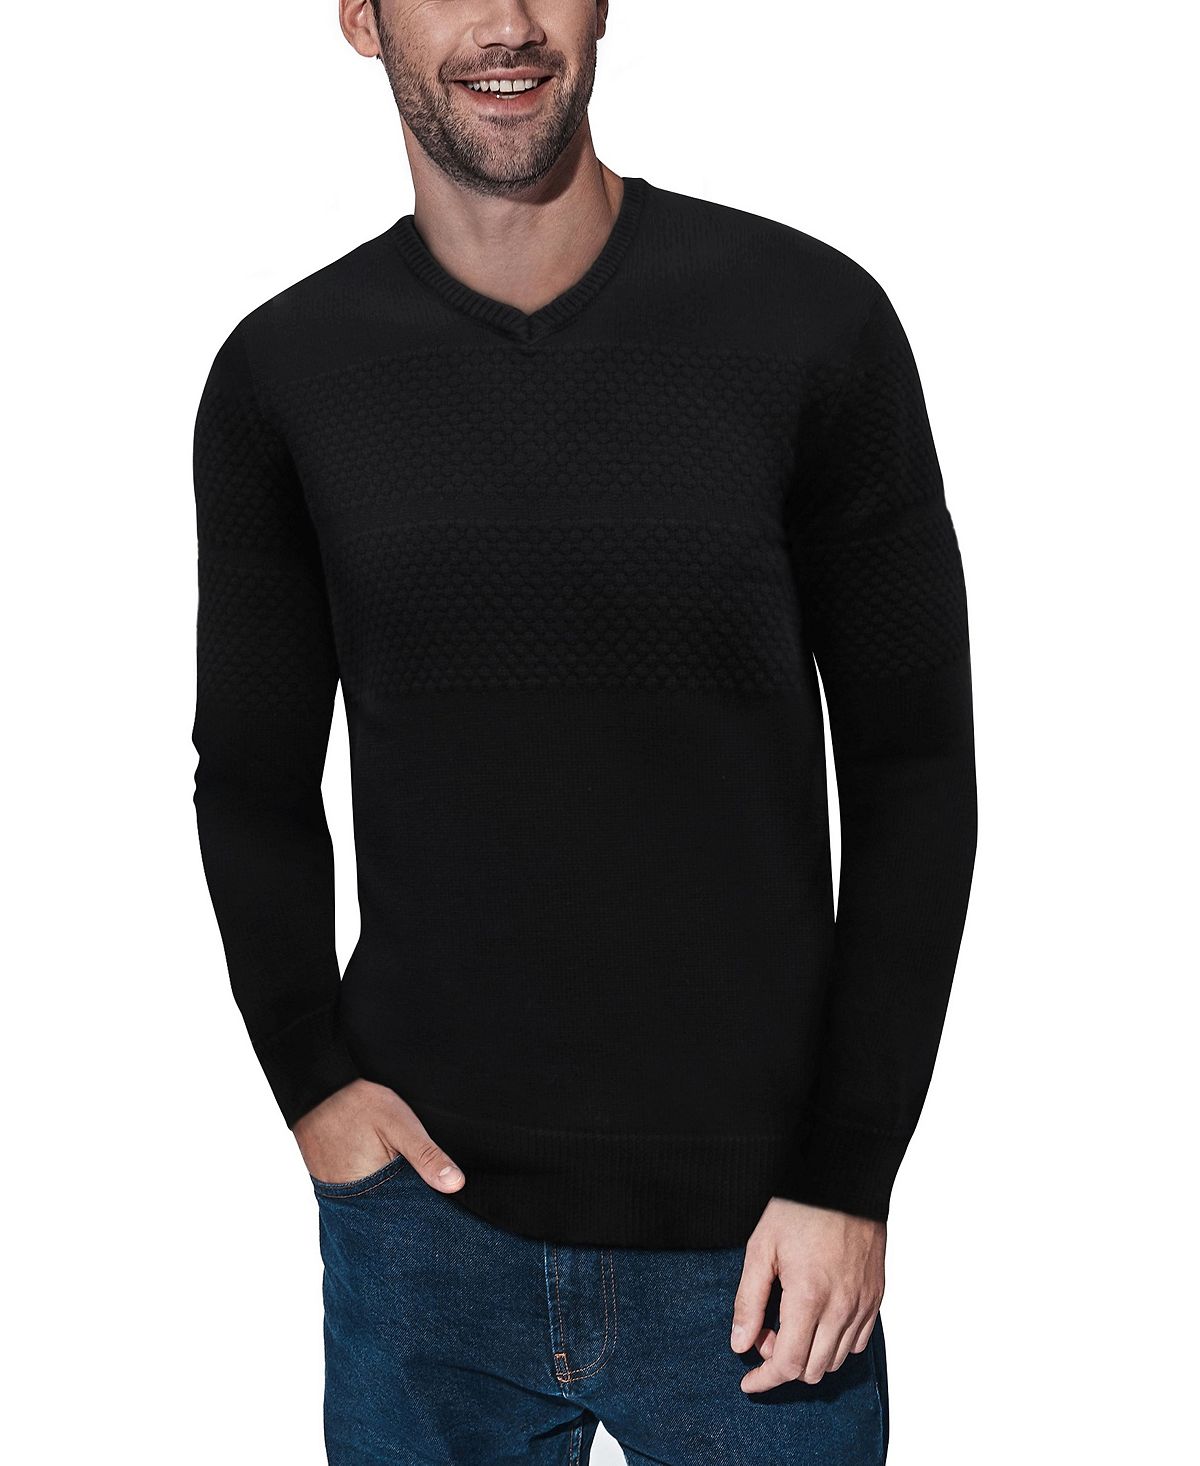 Мужской свитер сотовой вязки с v-образным вырезом X-Ray, черный женский пуловер с вышивкой и v образным вырезом